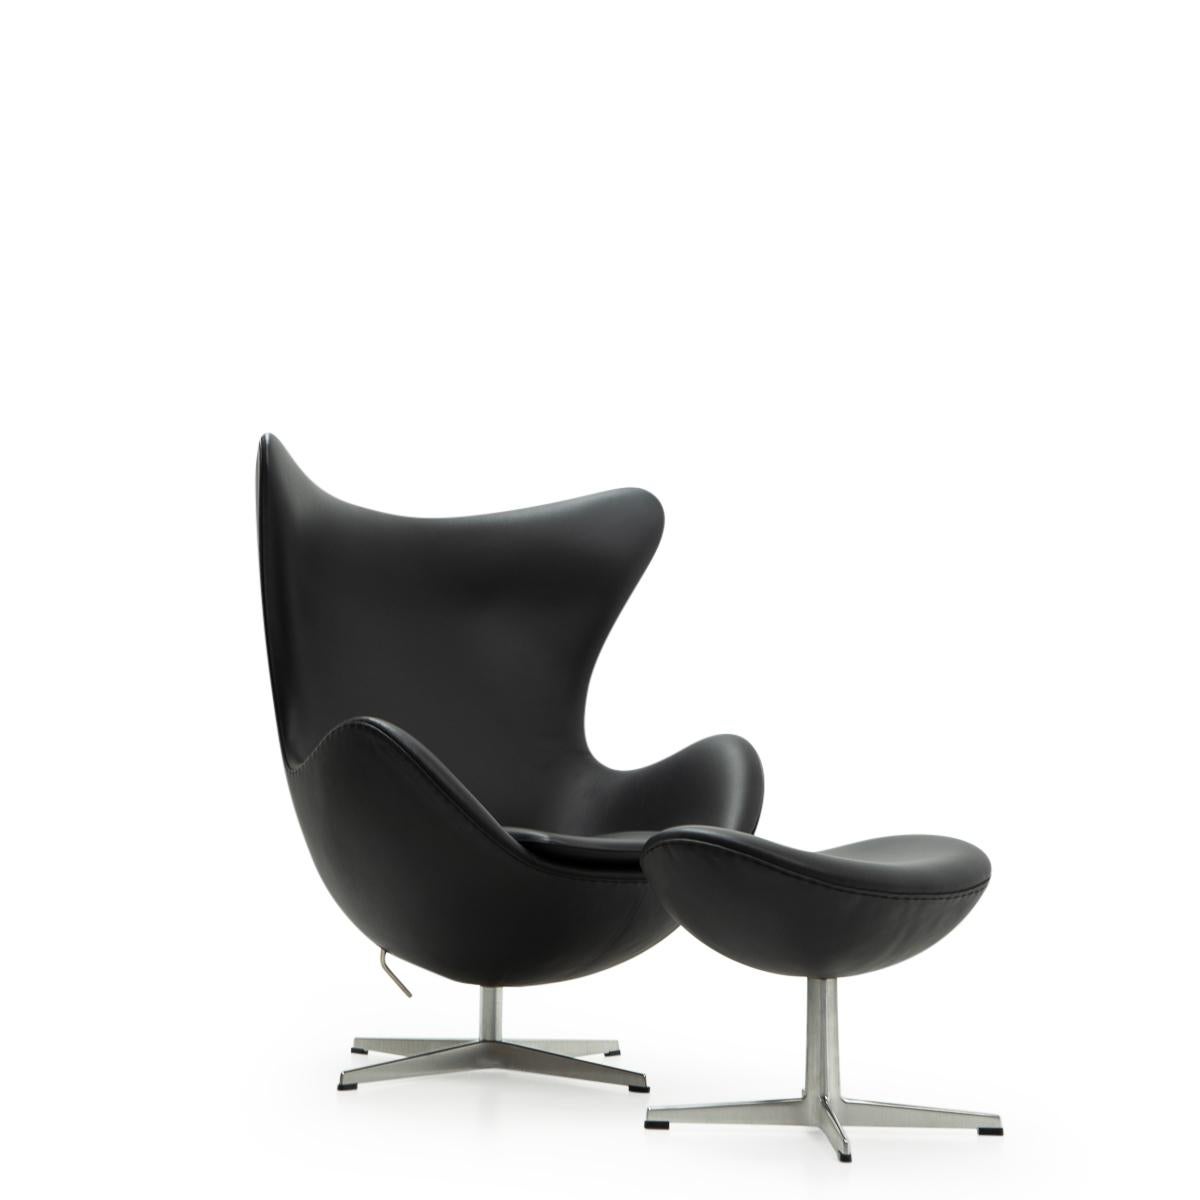 Chaise et ottoman Egg en cuir noir d'Arne Jacobsen pour Fritz Hansen produits en 2016.

La chaise Egg d'Arne Jacobsen n'a pas besoin d'être présentée, car elle est l'une des pièces les plus reconnaissables et les plus recherchées du design classique